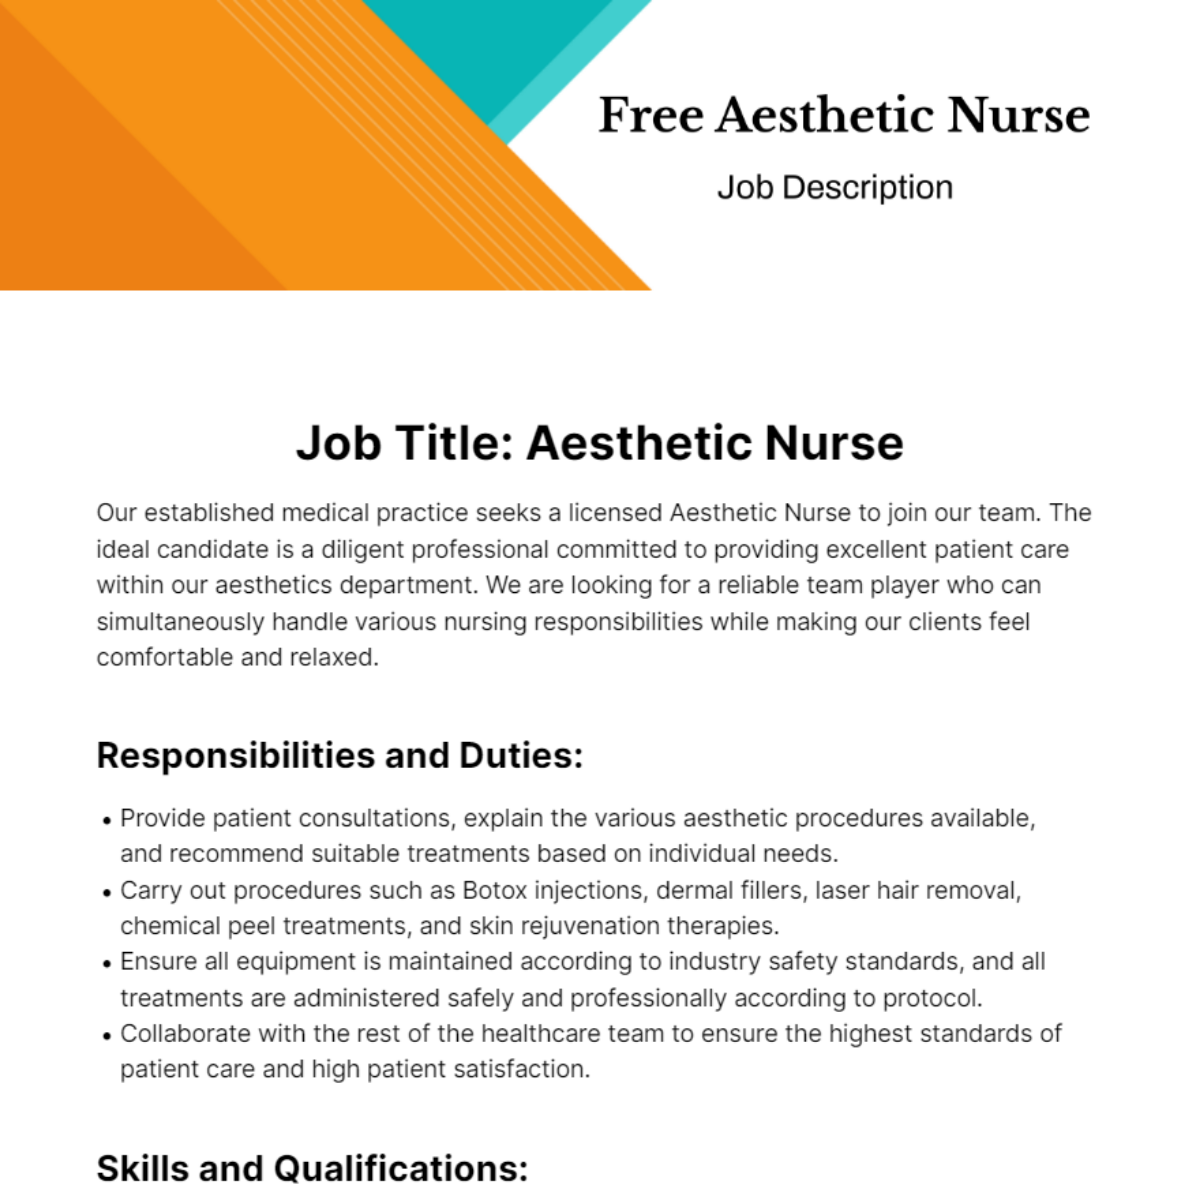 Free Aesthetic Nurse Job Description Template